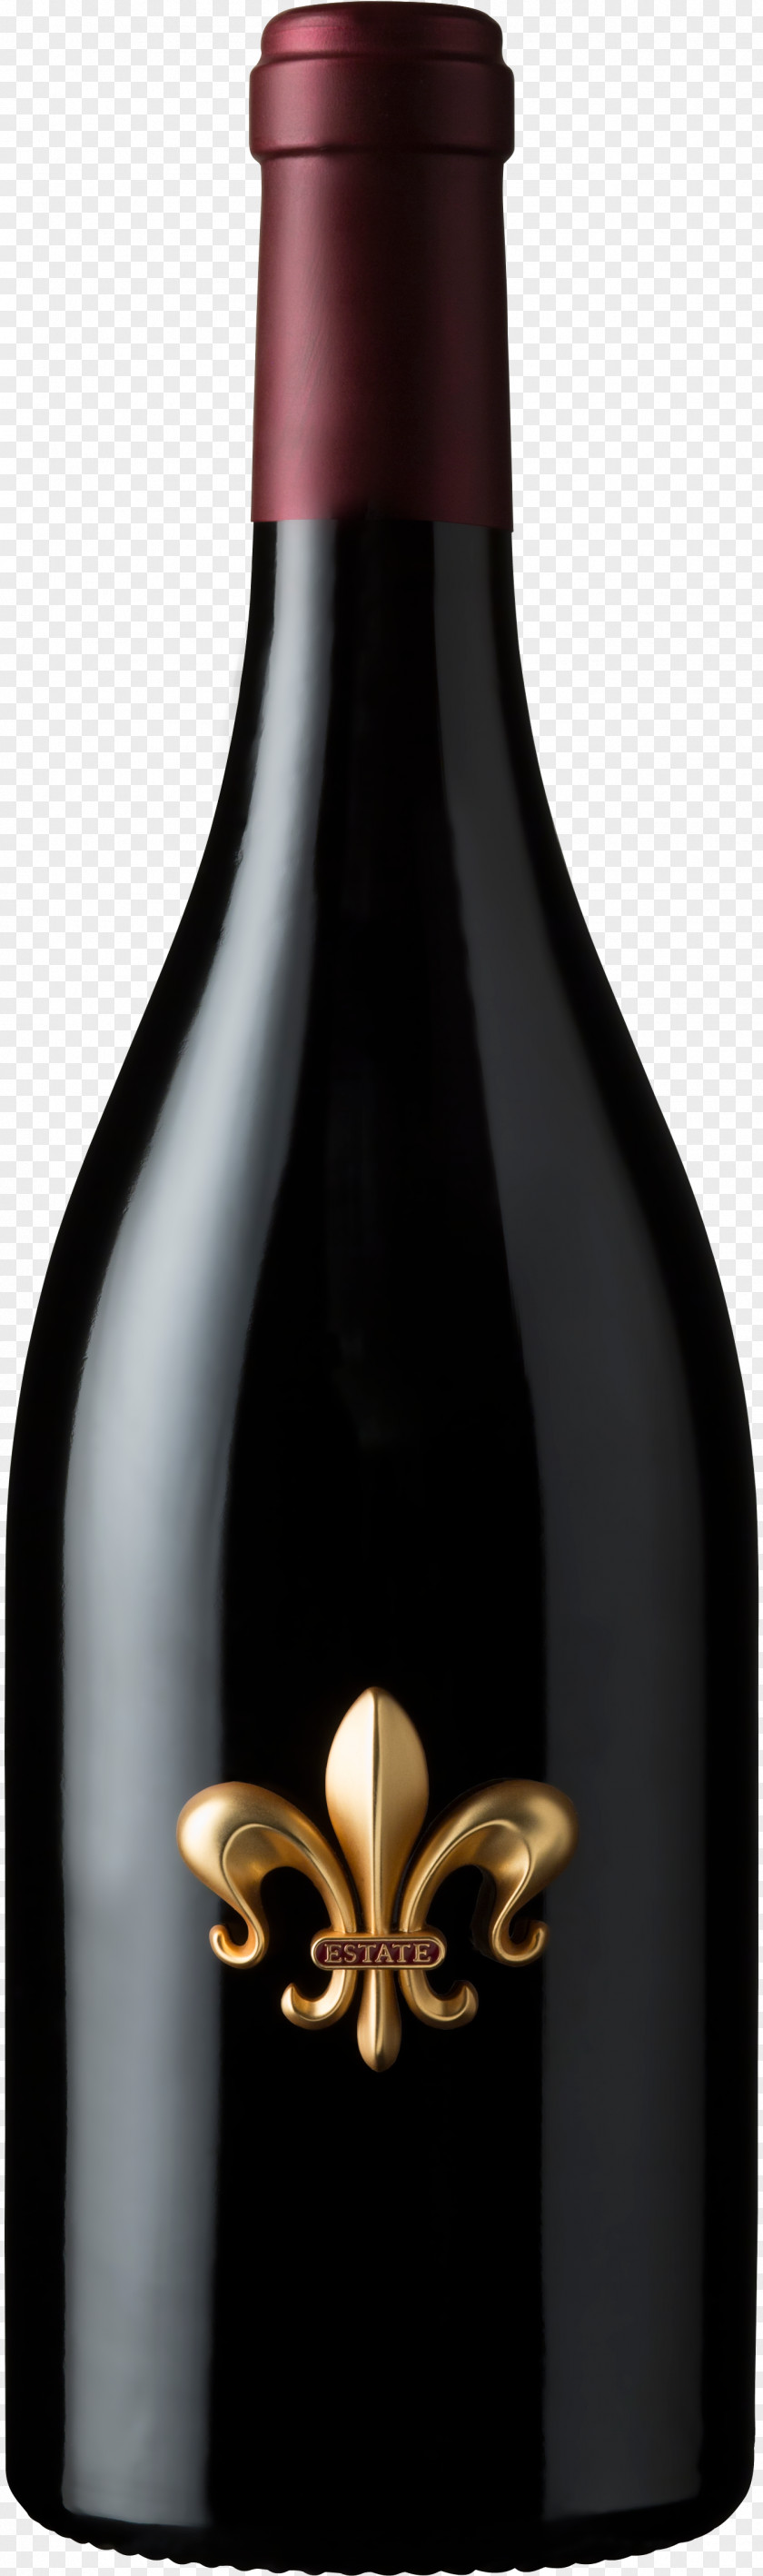 Wine DeLoach Vineyards Pinot Noir Zinfandel Cabernet Sauvignon PNG